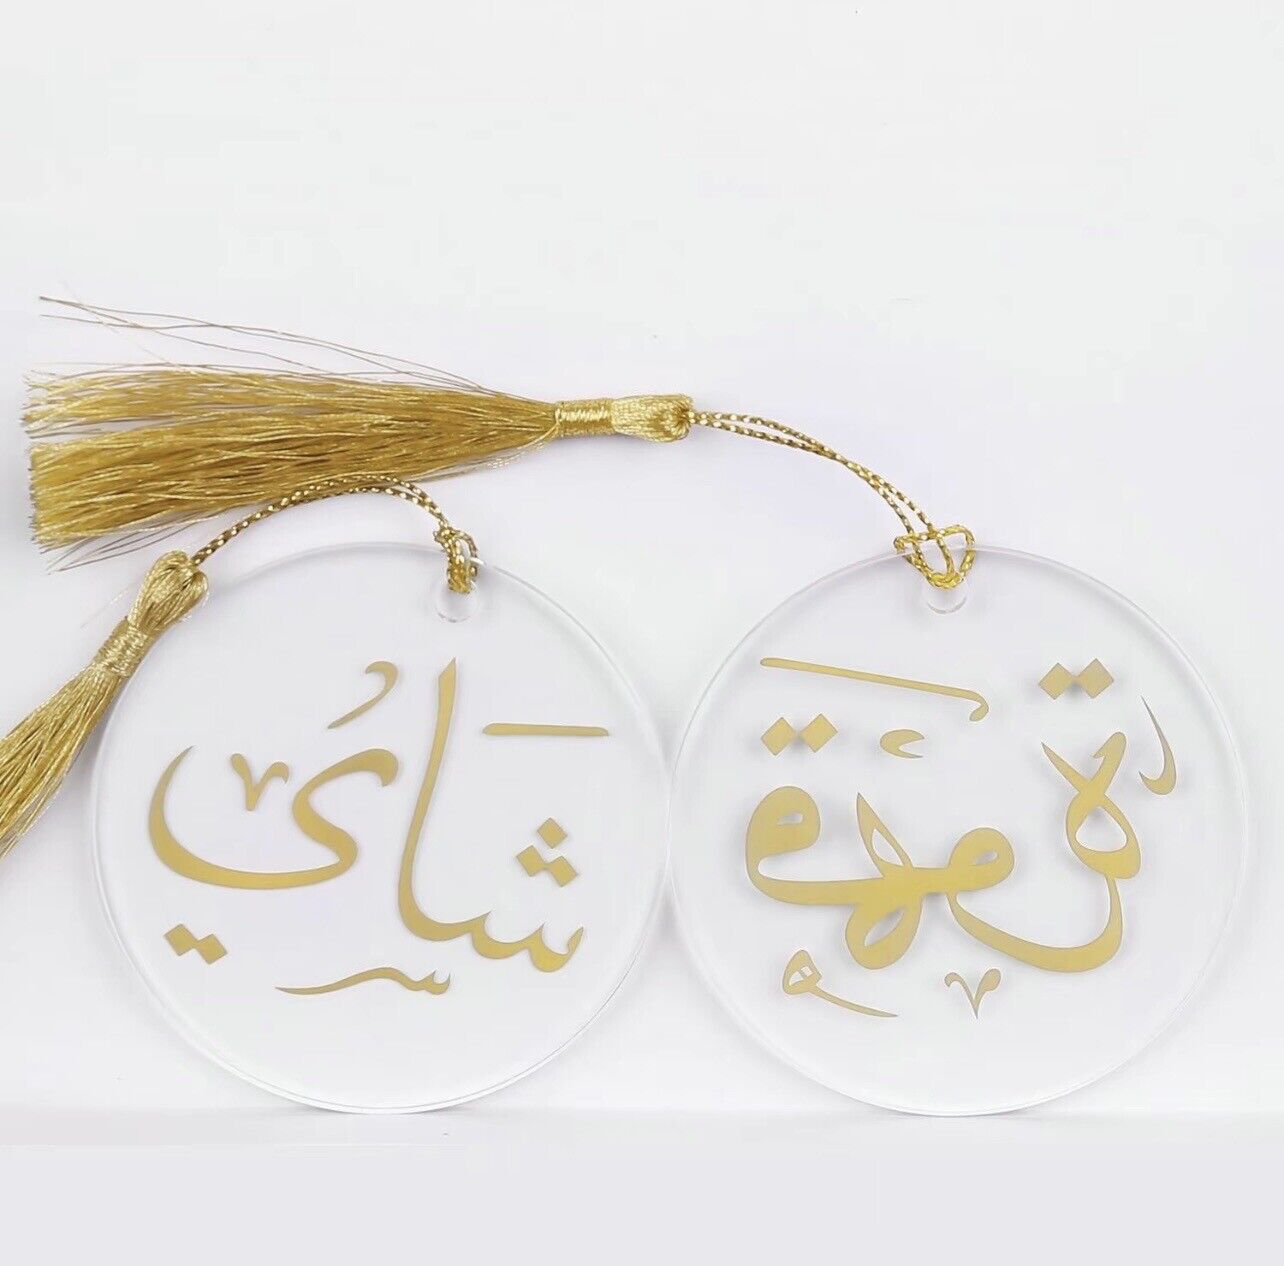 Arabic Coffee & Tea Decorative Ornament, 2pcs Ramadan Ornaments with Tassels.